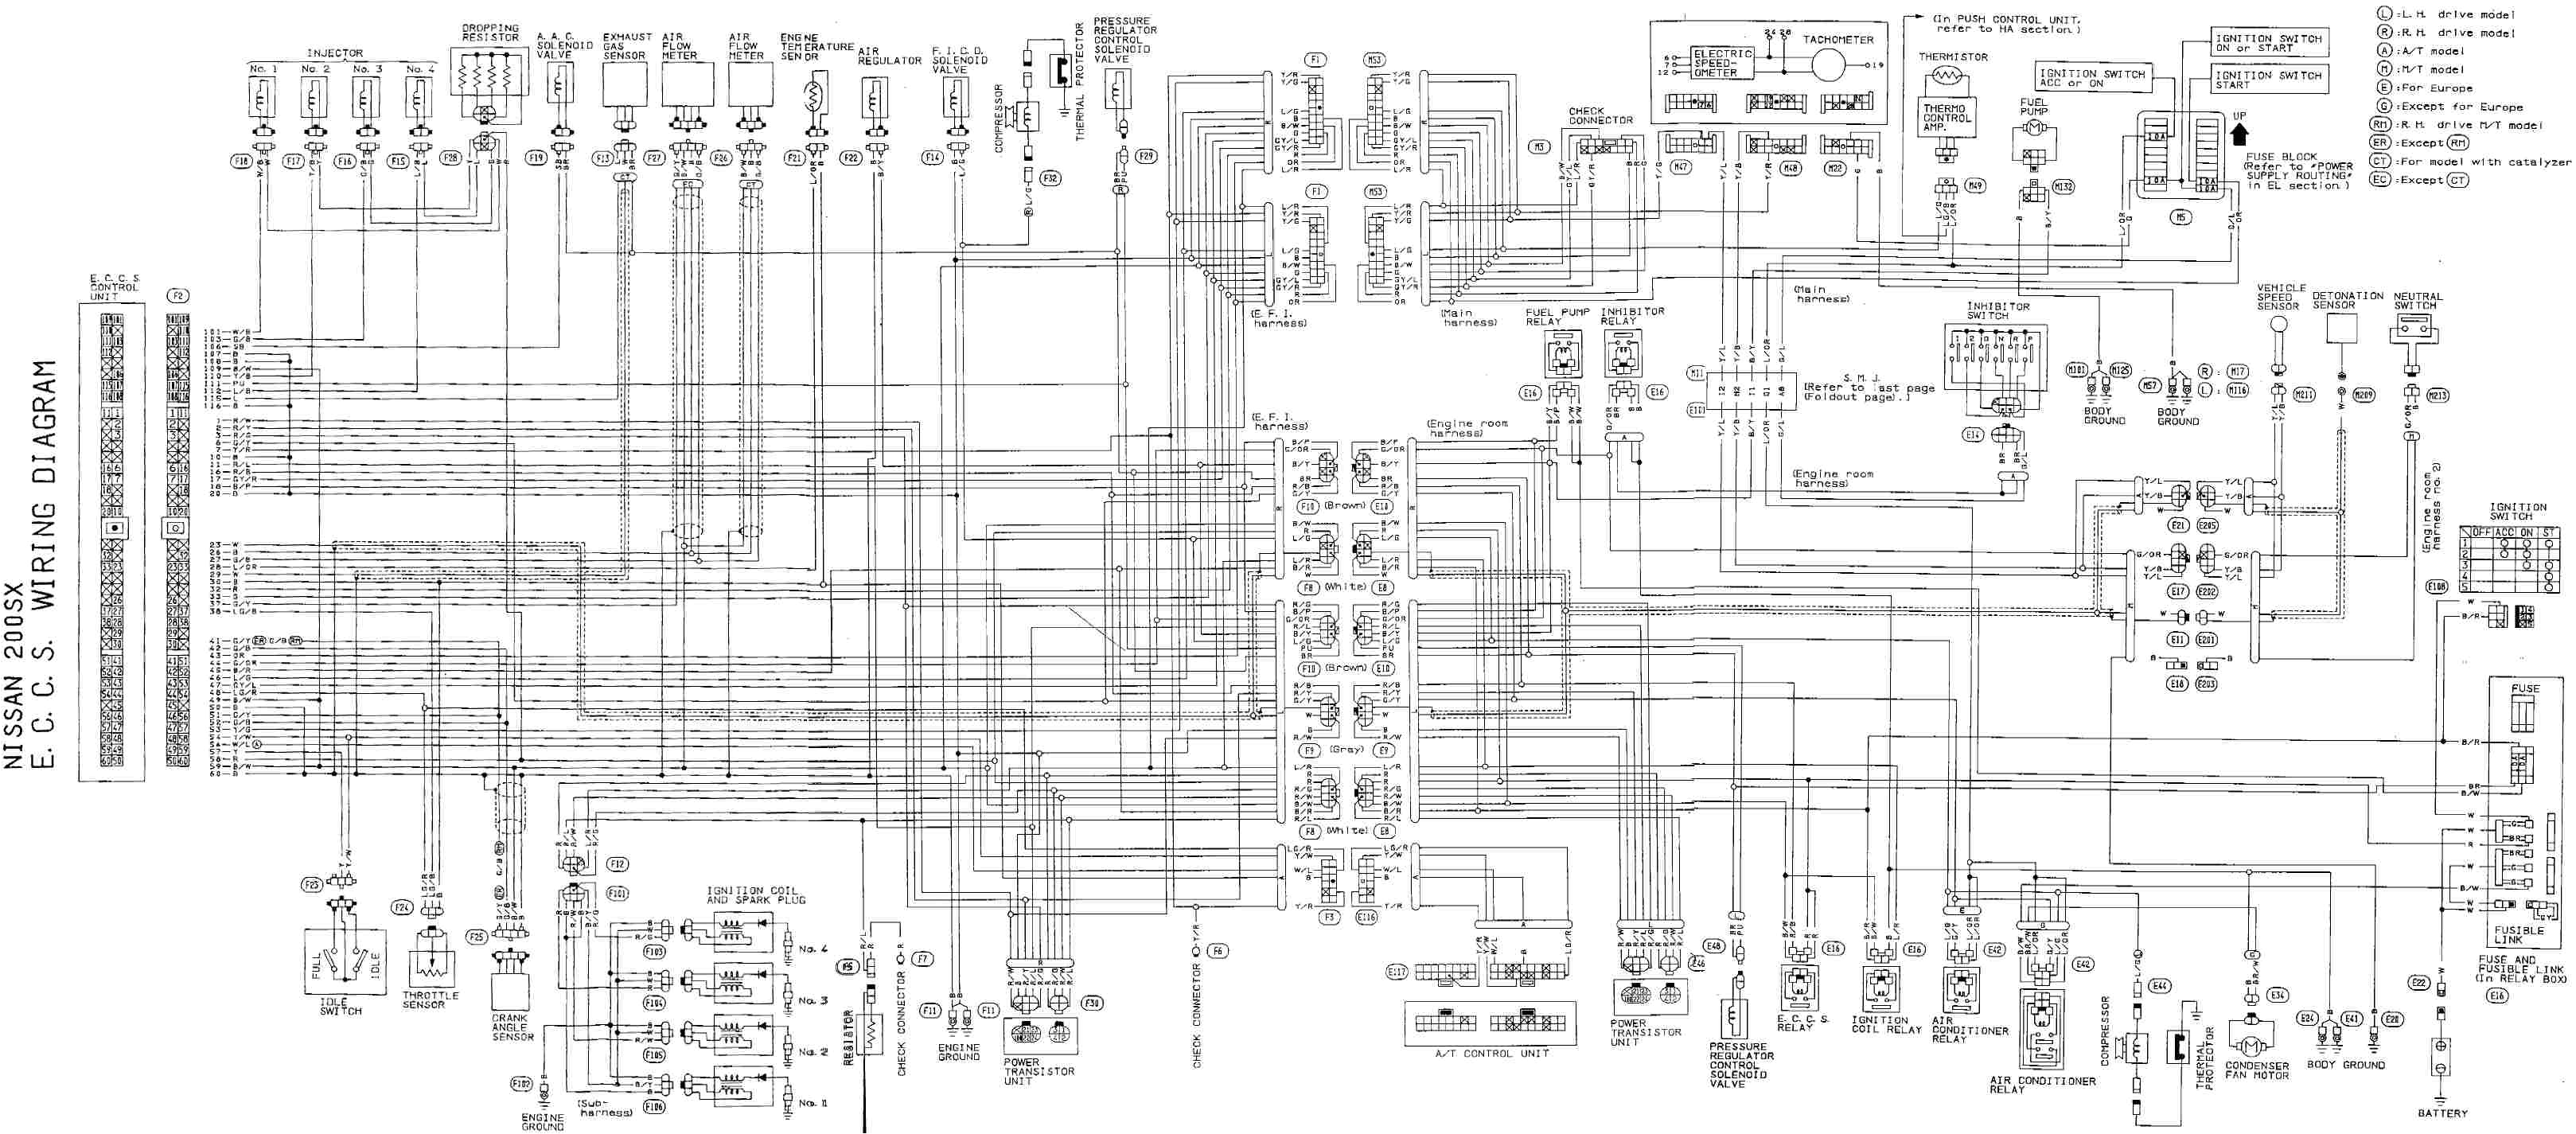 wiring diagram awesome detail nissan hardbody schematic diagram 1989 nissan electrical diagram wiring diagram paper wiring